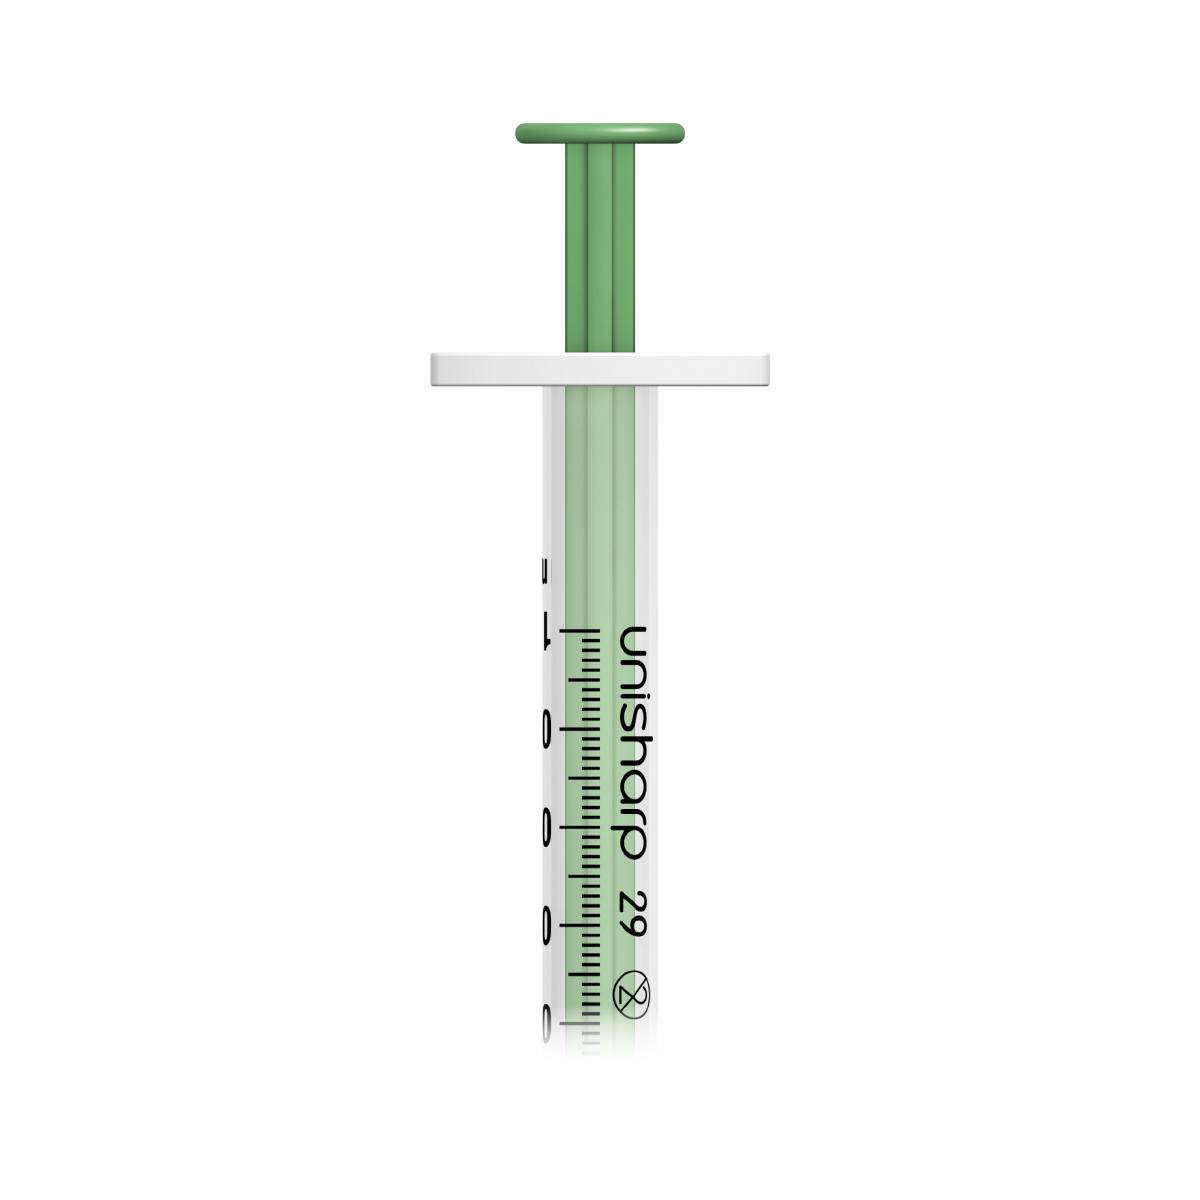 1ml 0.5 inch 29g Green Unisharp Syringe and Needle u100 - UKMEDI